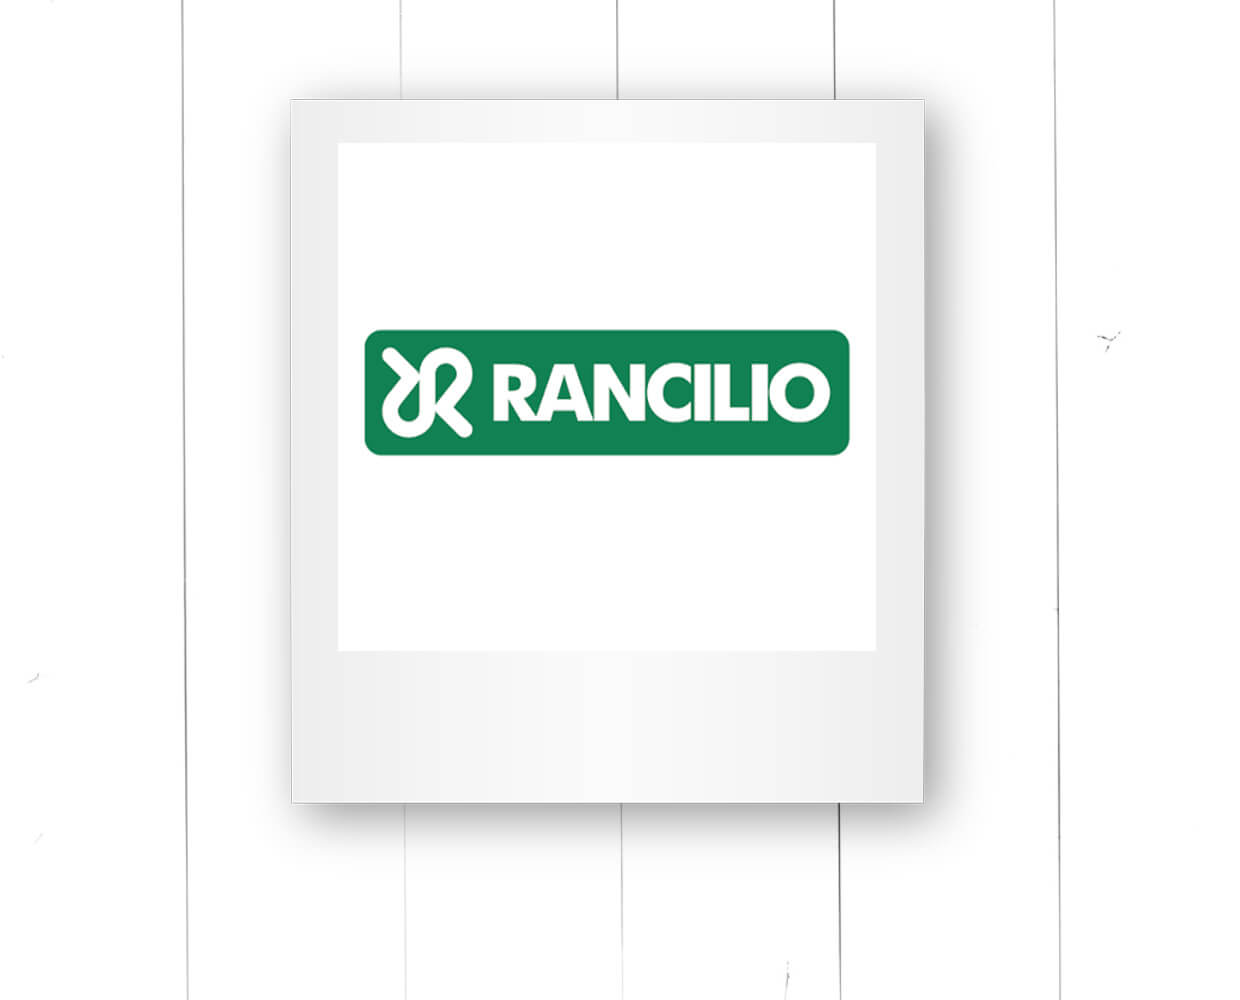 Rancilio Logo